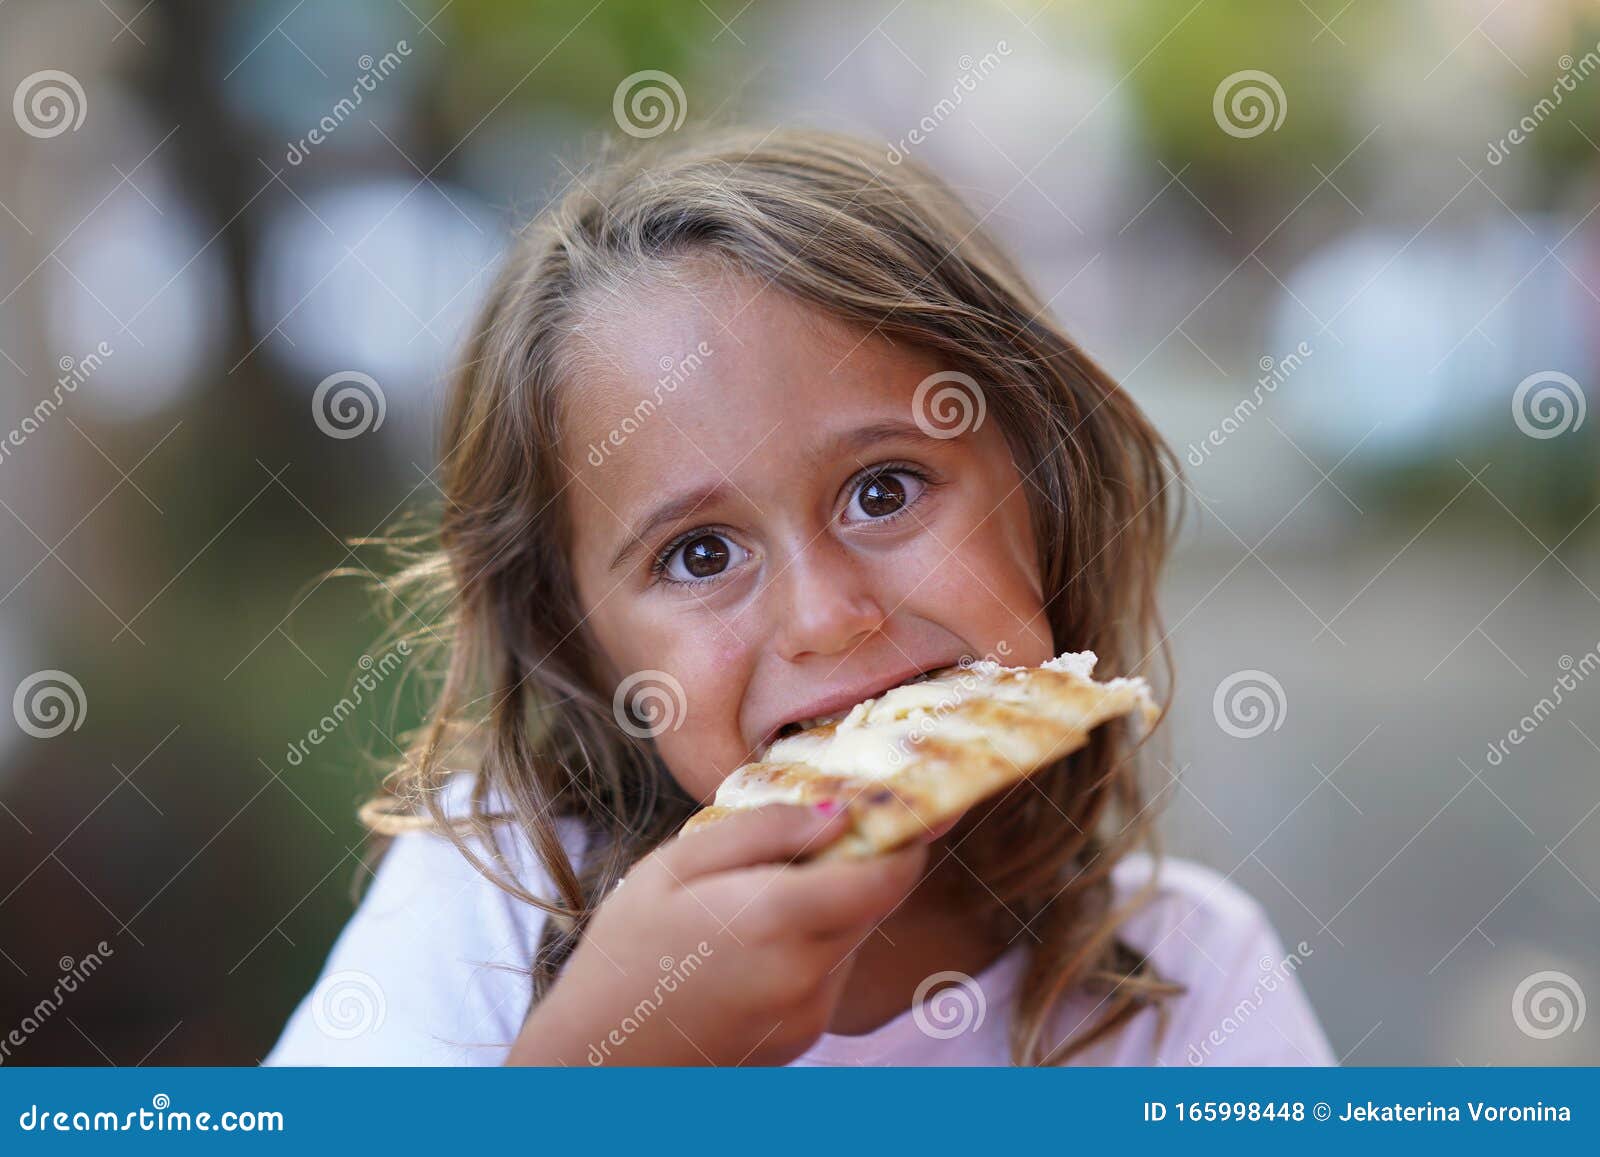 小女孩吃巨大的美味三明治 · 免费素材图片